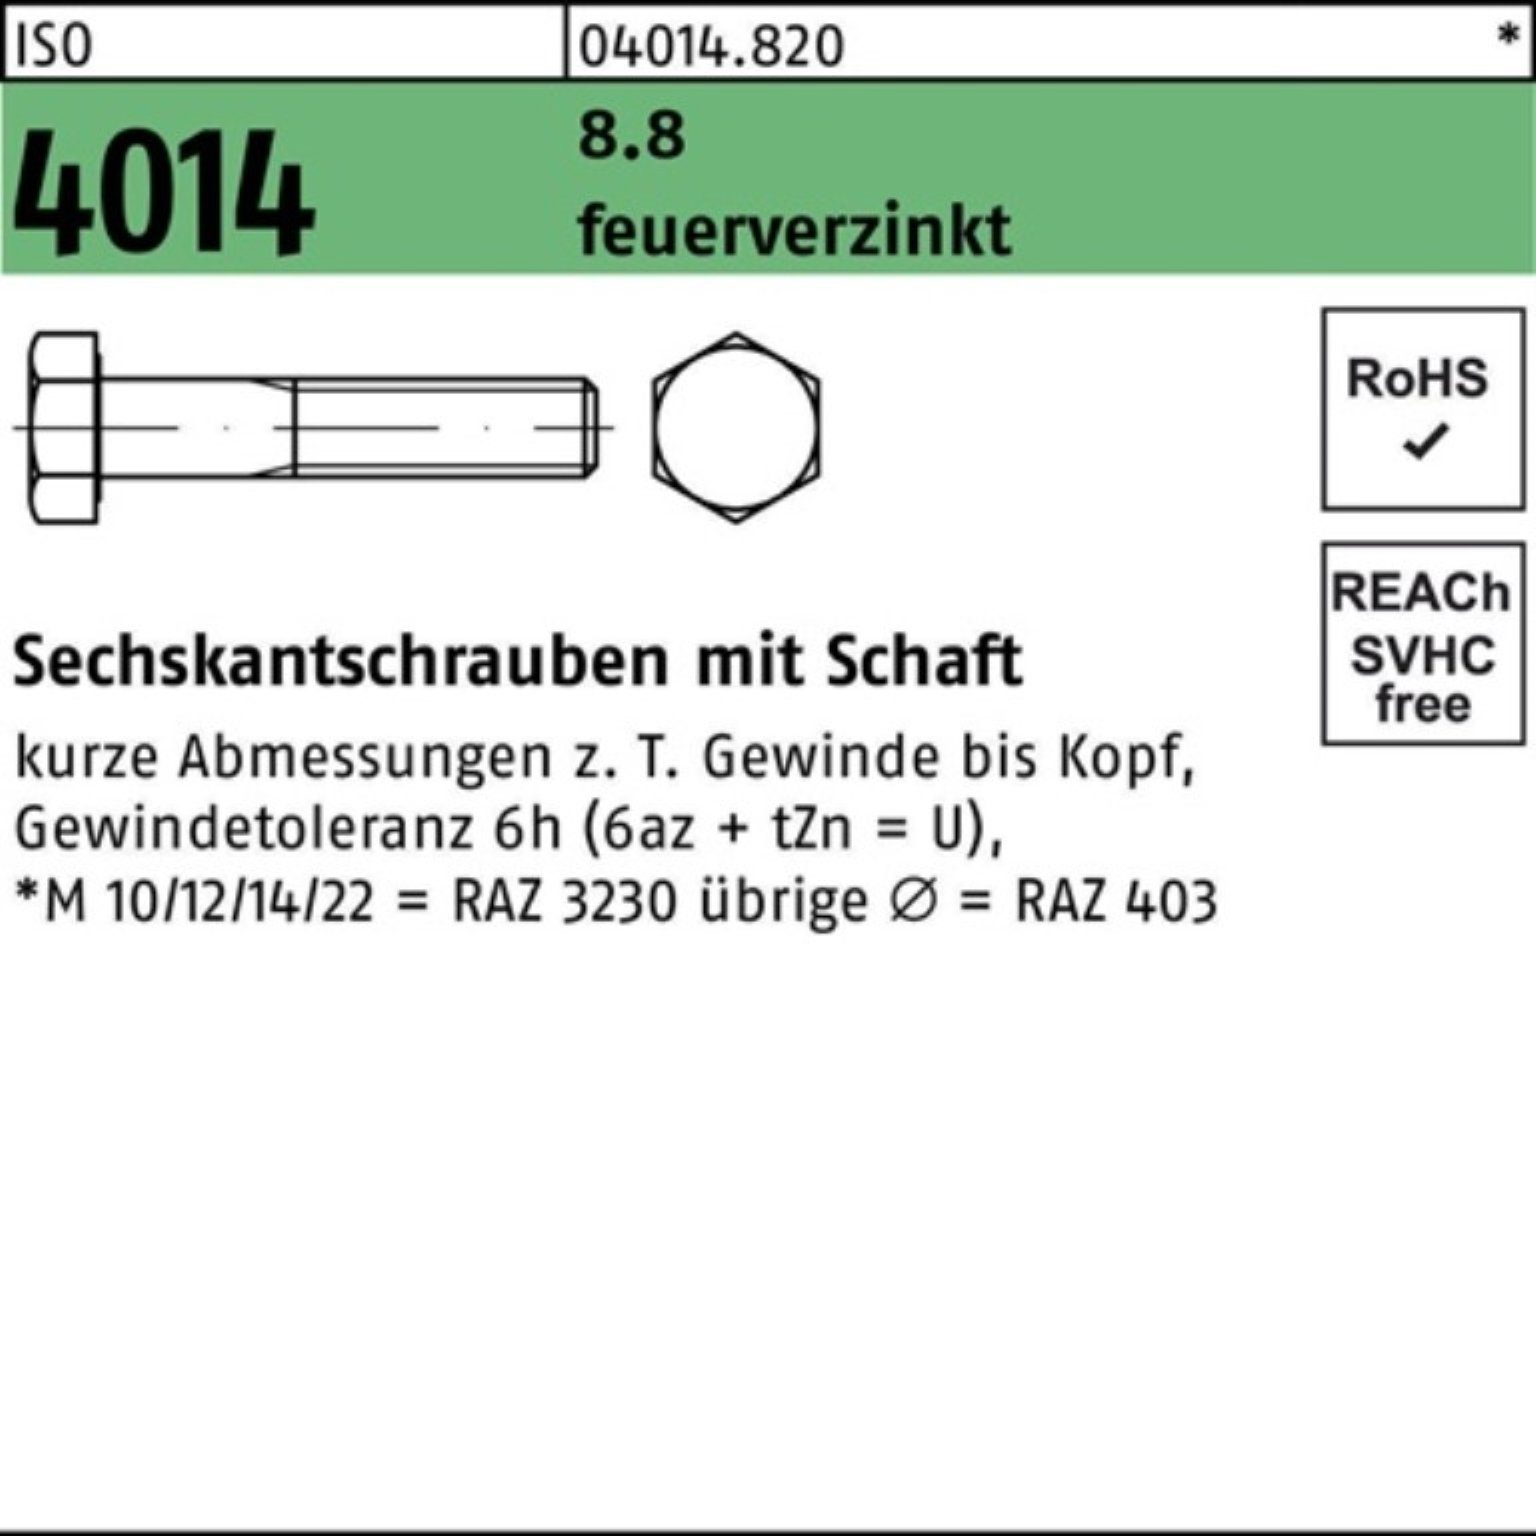 Bufab Sechskantschraube 100er Pack Sechskantschraube ISO 4014 Schaft M20x 200 8.8 feuerverz. 1